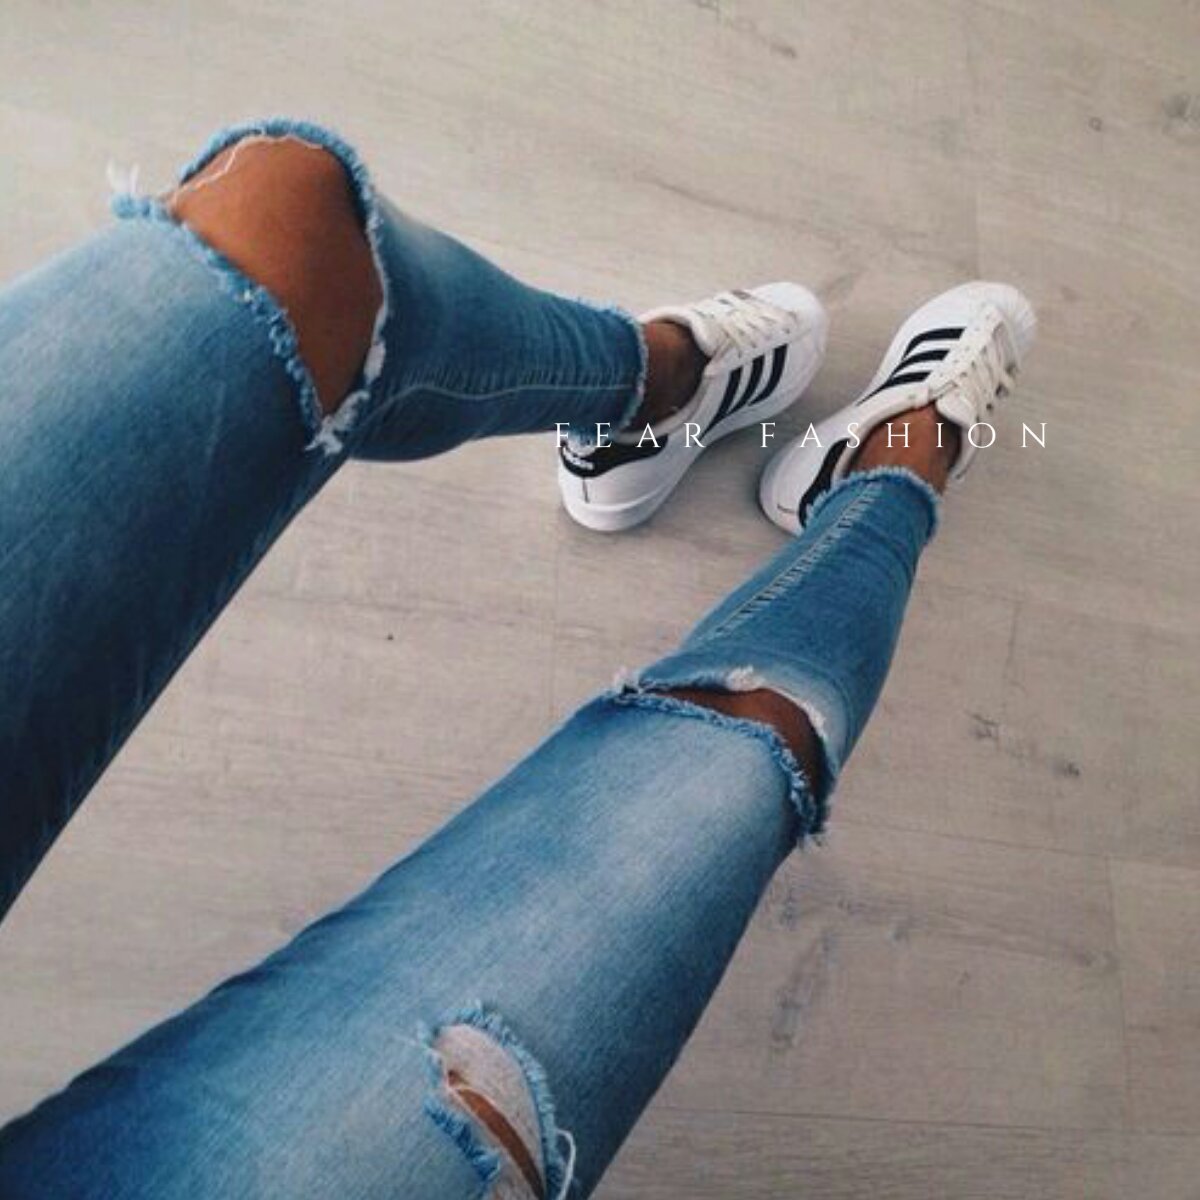 фото женских ног в джинсах